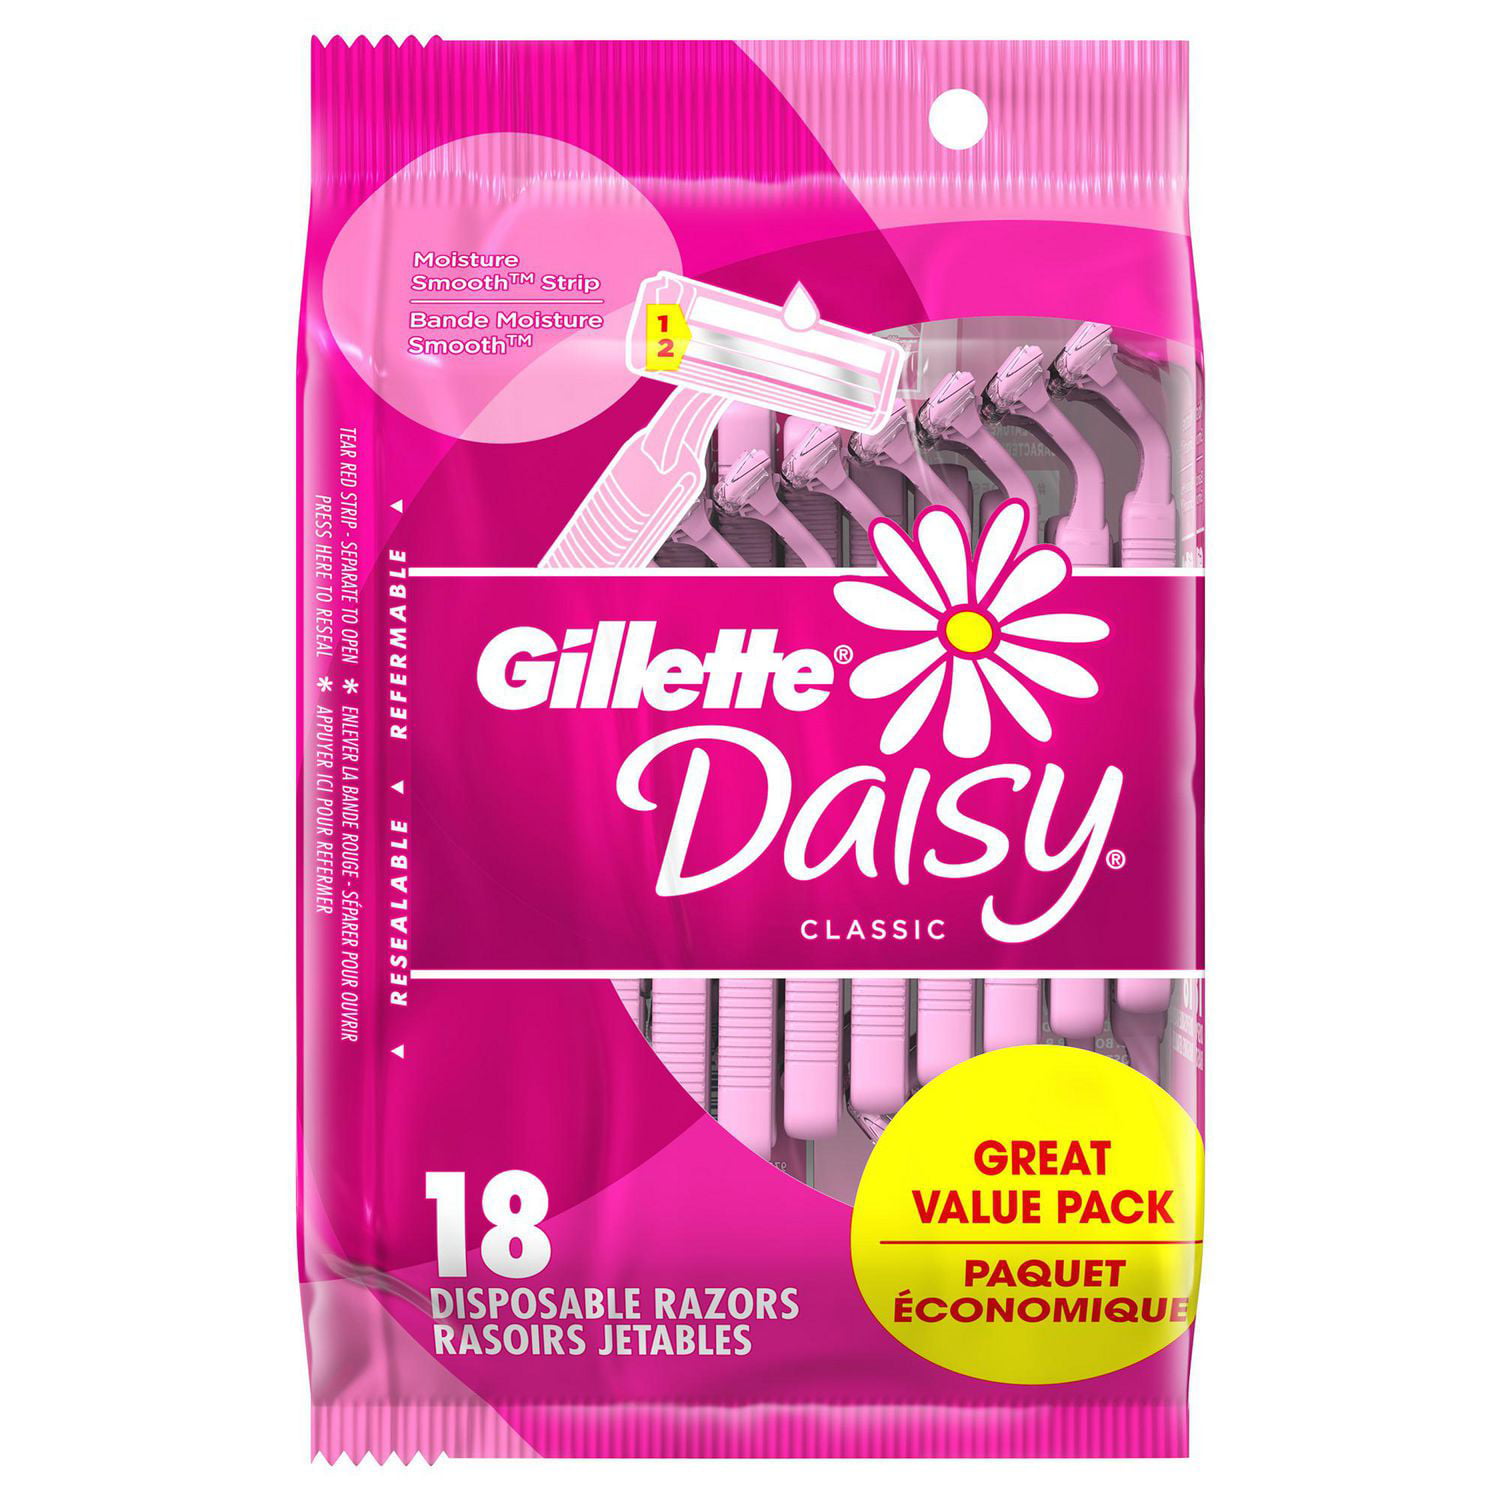 Gillette Daisy Classic Womens Disposable Razor, 18 Disposable Razors 